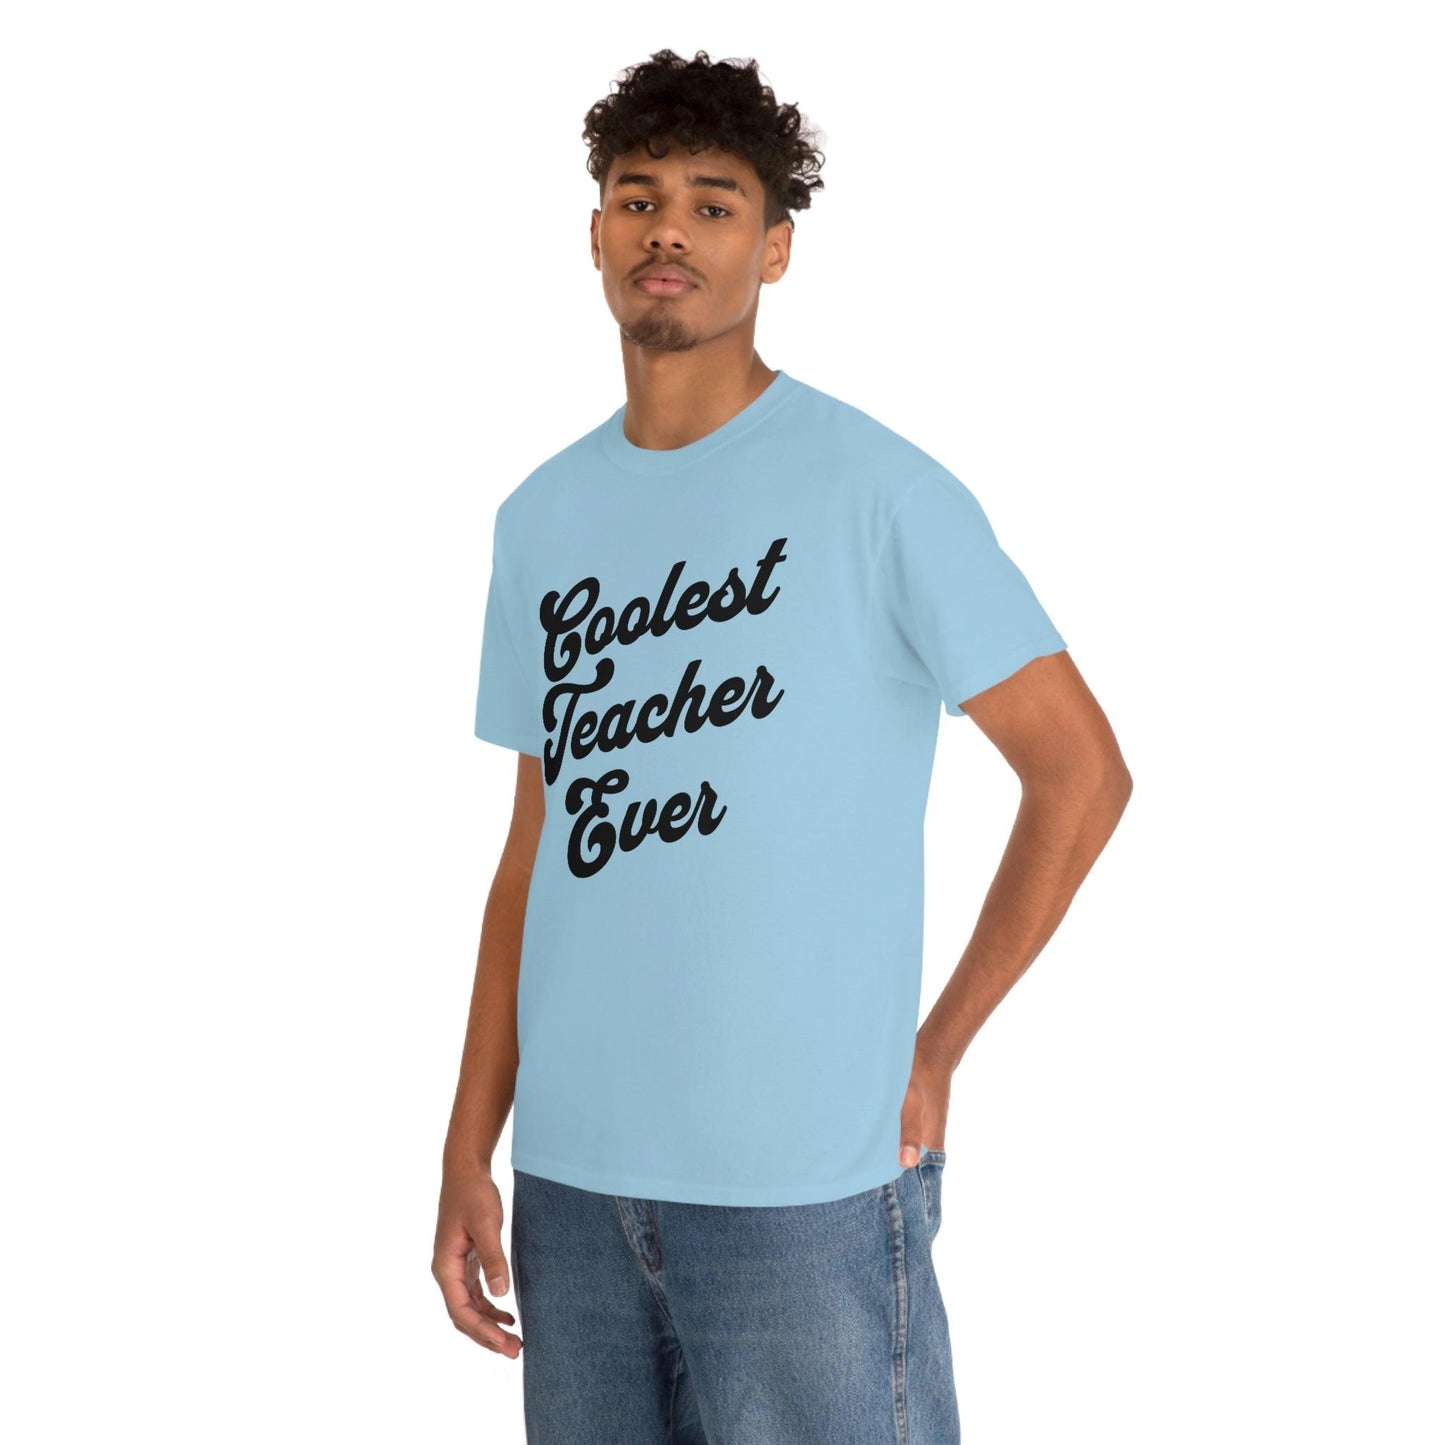 Coolest Teacher Ever Shirt